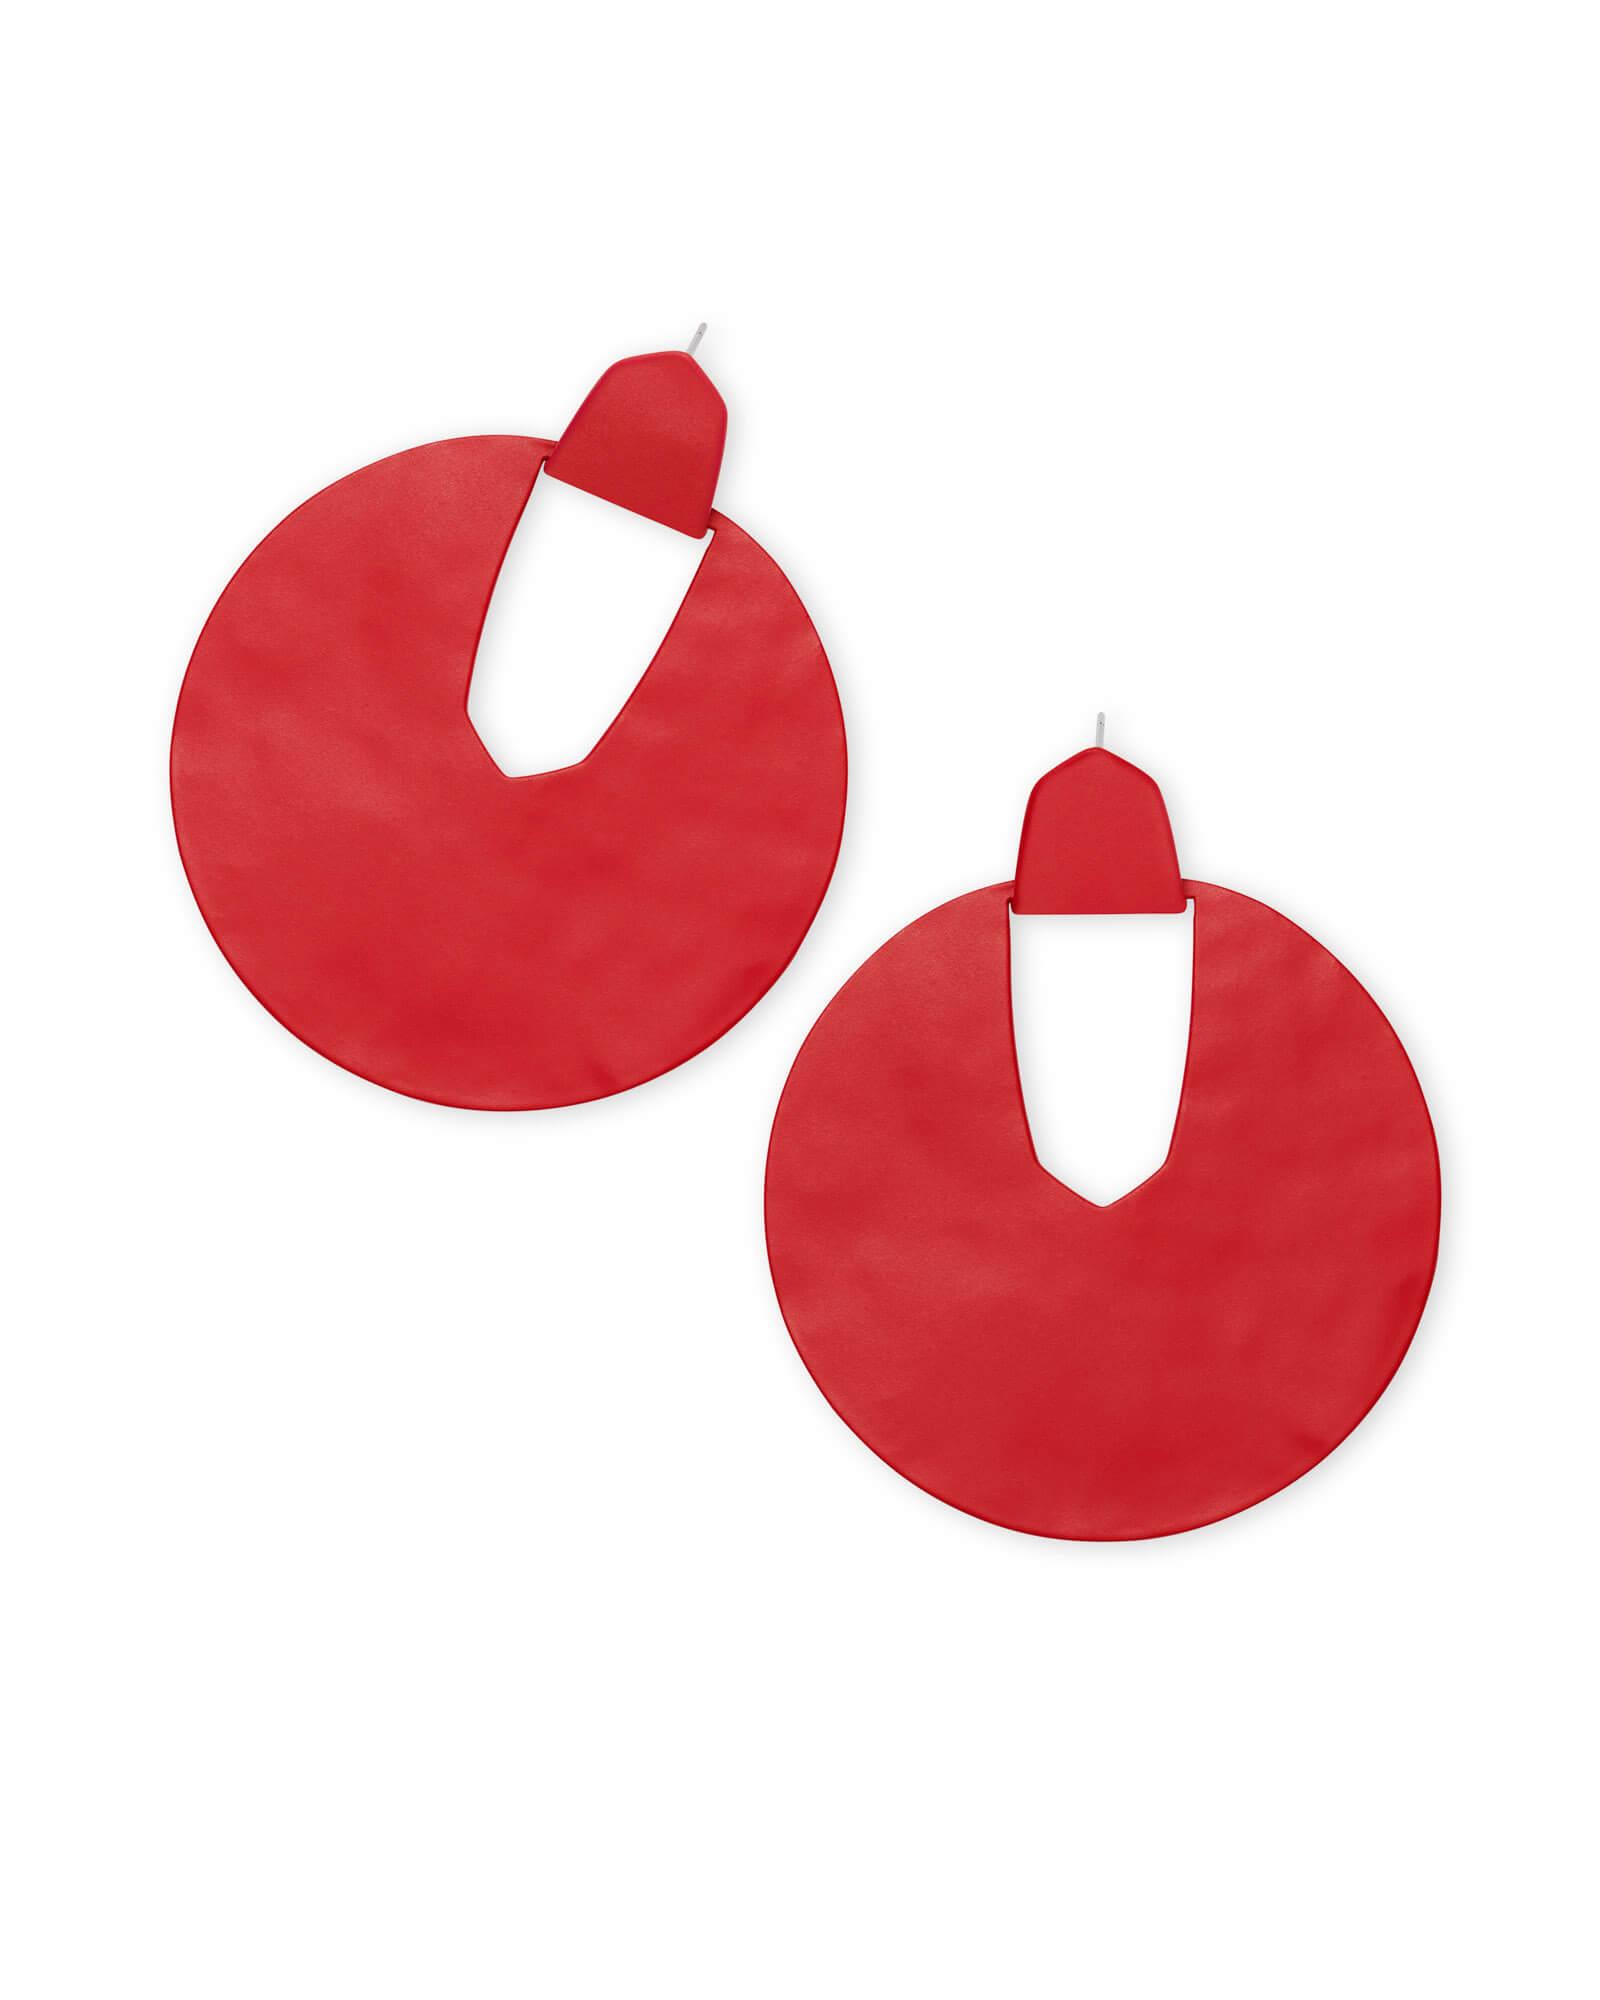 Diane in Red Logo - Diane Matte Statement Earrings in Red | Kendra Scott